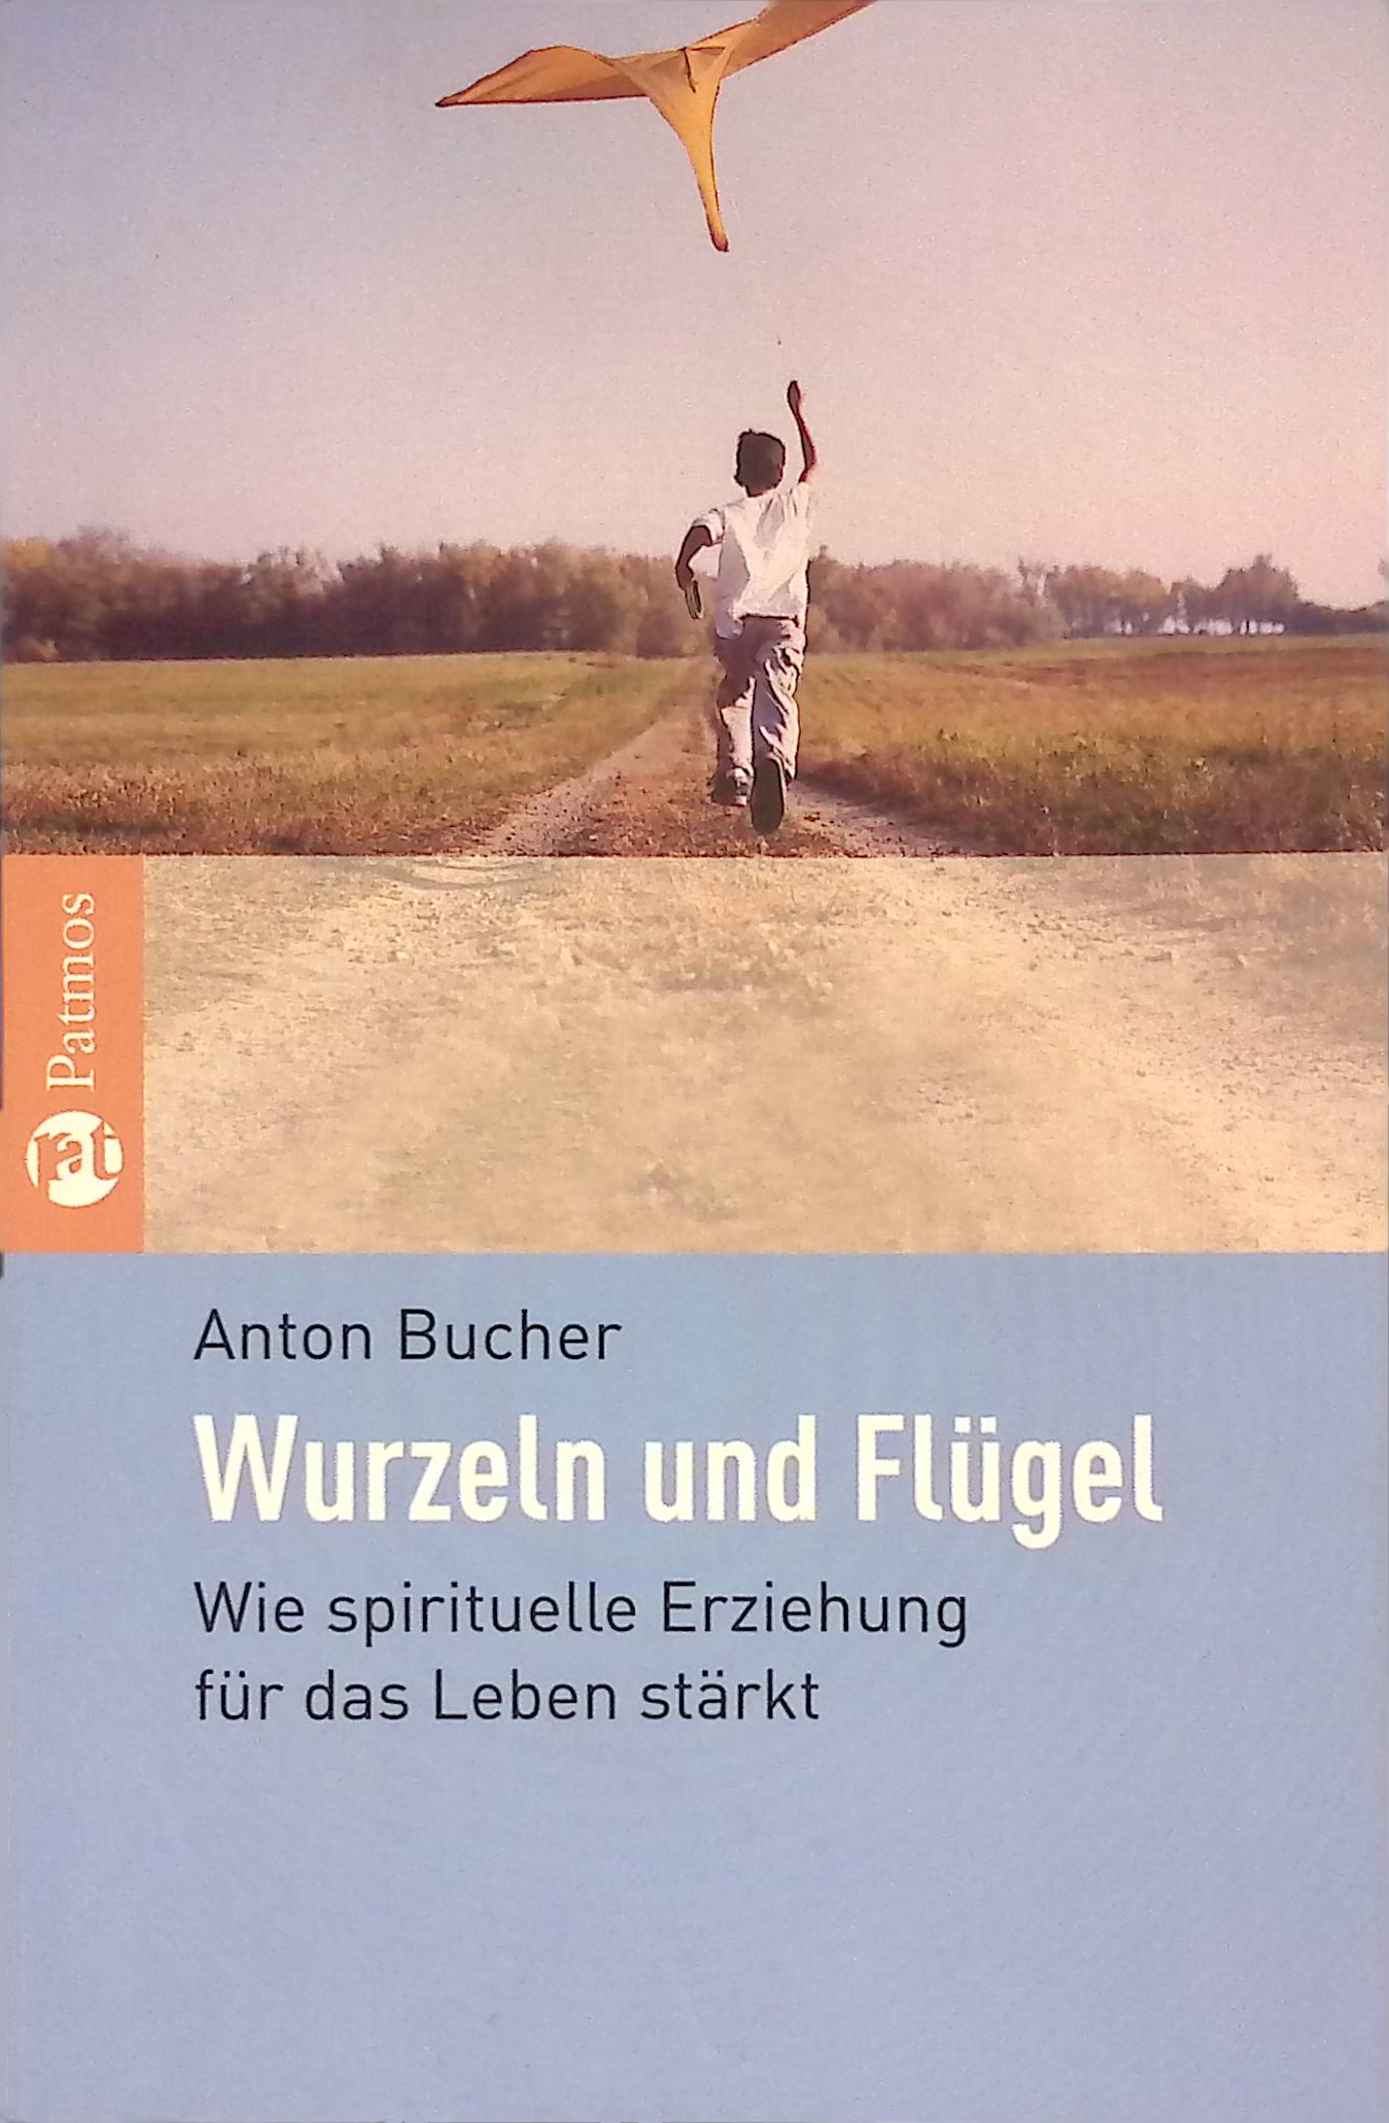 Wurzeln und Flügel : wie spirituelle Erziehung für das Leben stärkt. - Bucher, Anton A.